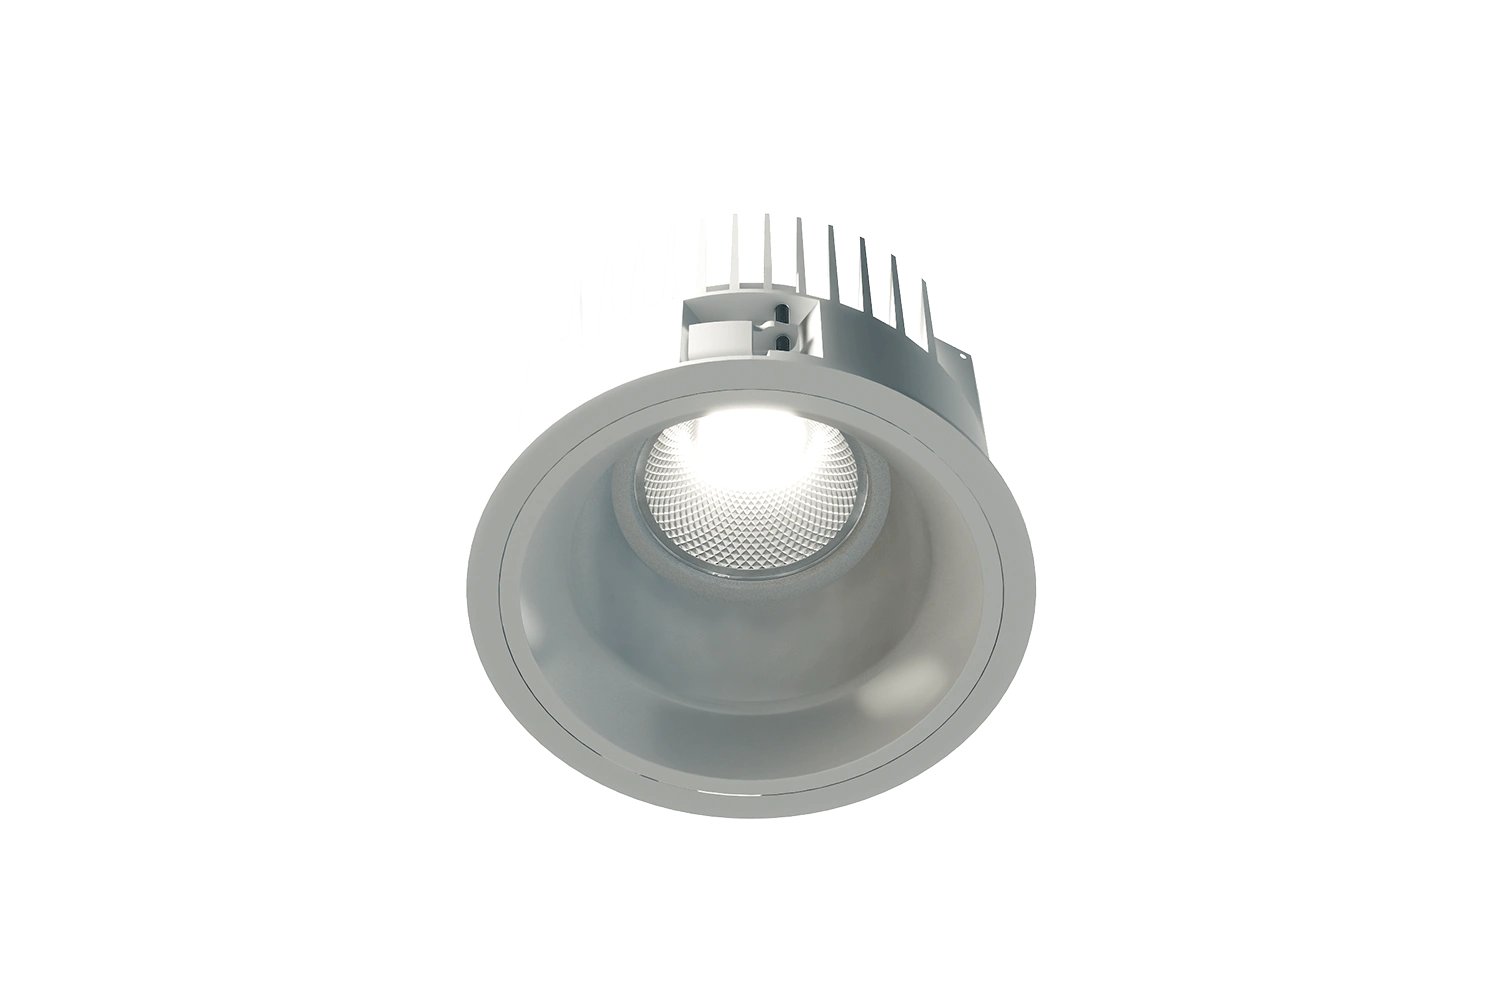 Produktleuchtenbild der Unio 615 LED Einbau-Downlight